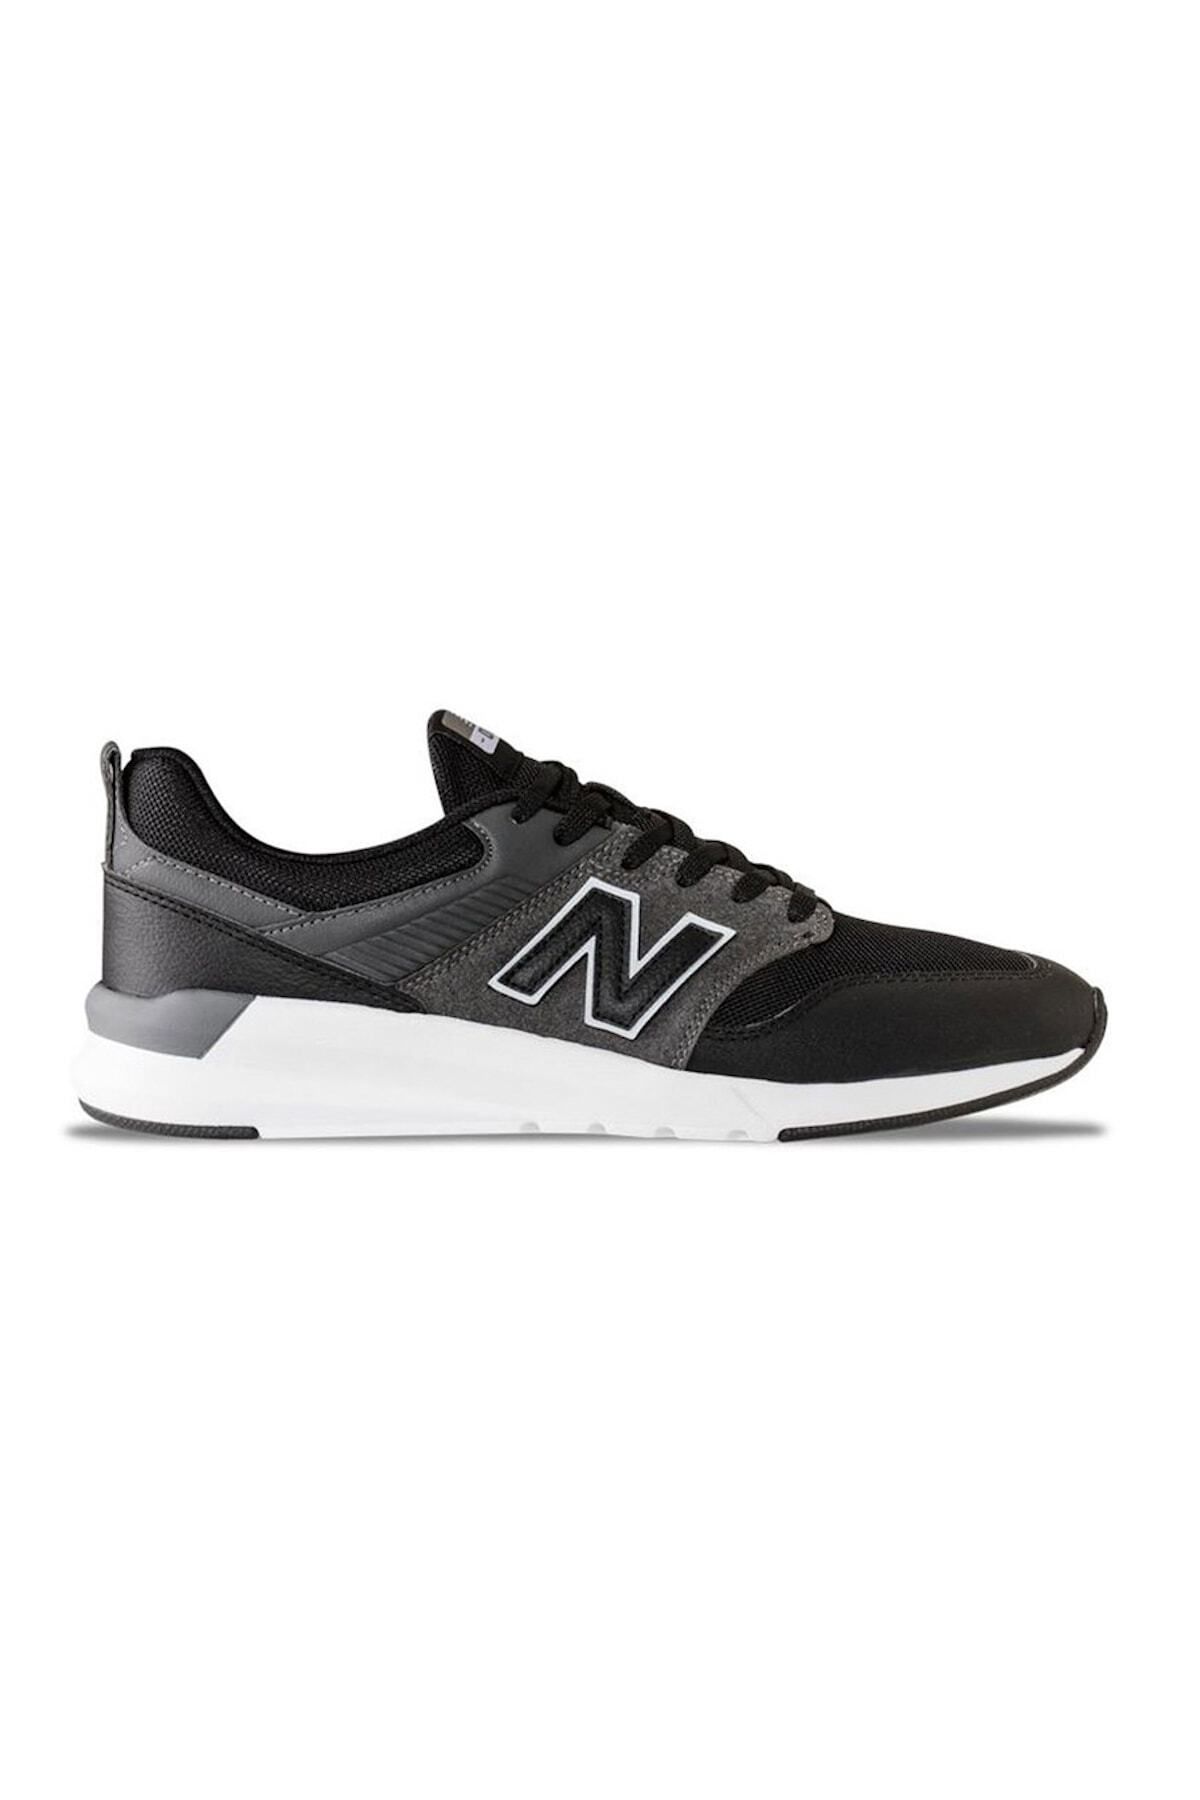 New Balance Erkek Siyah Yürüyüş Spor Ayakkabı Ms009tsbv3